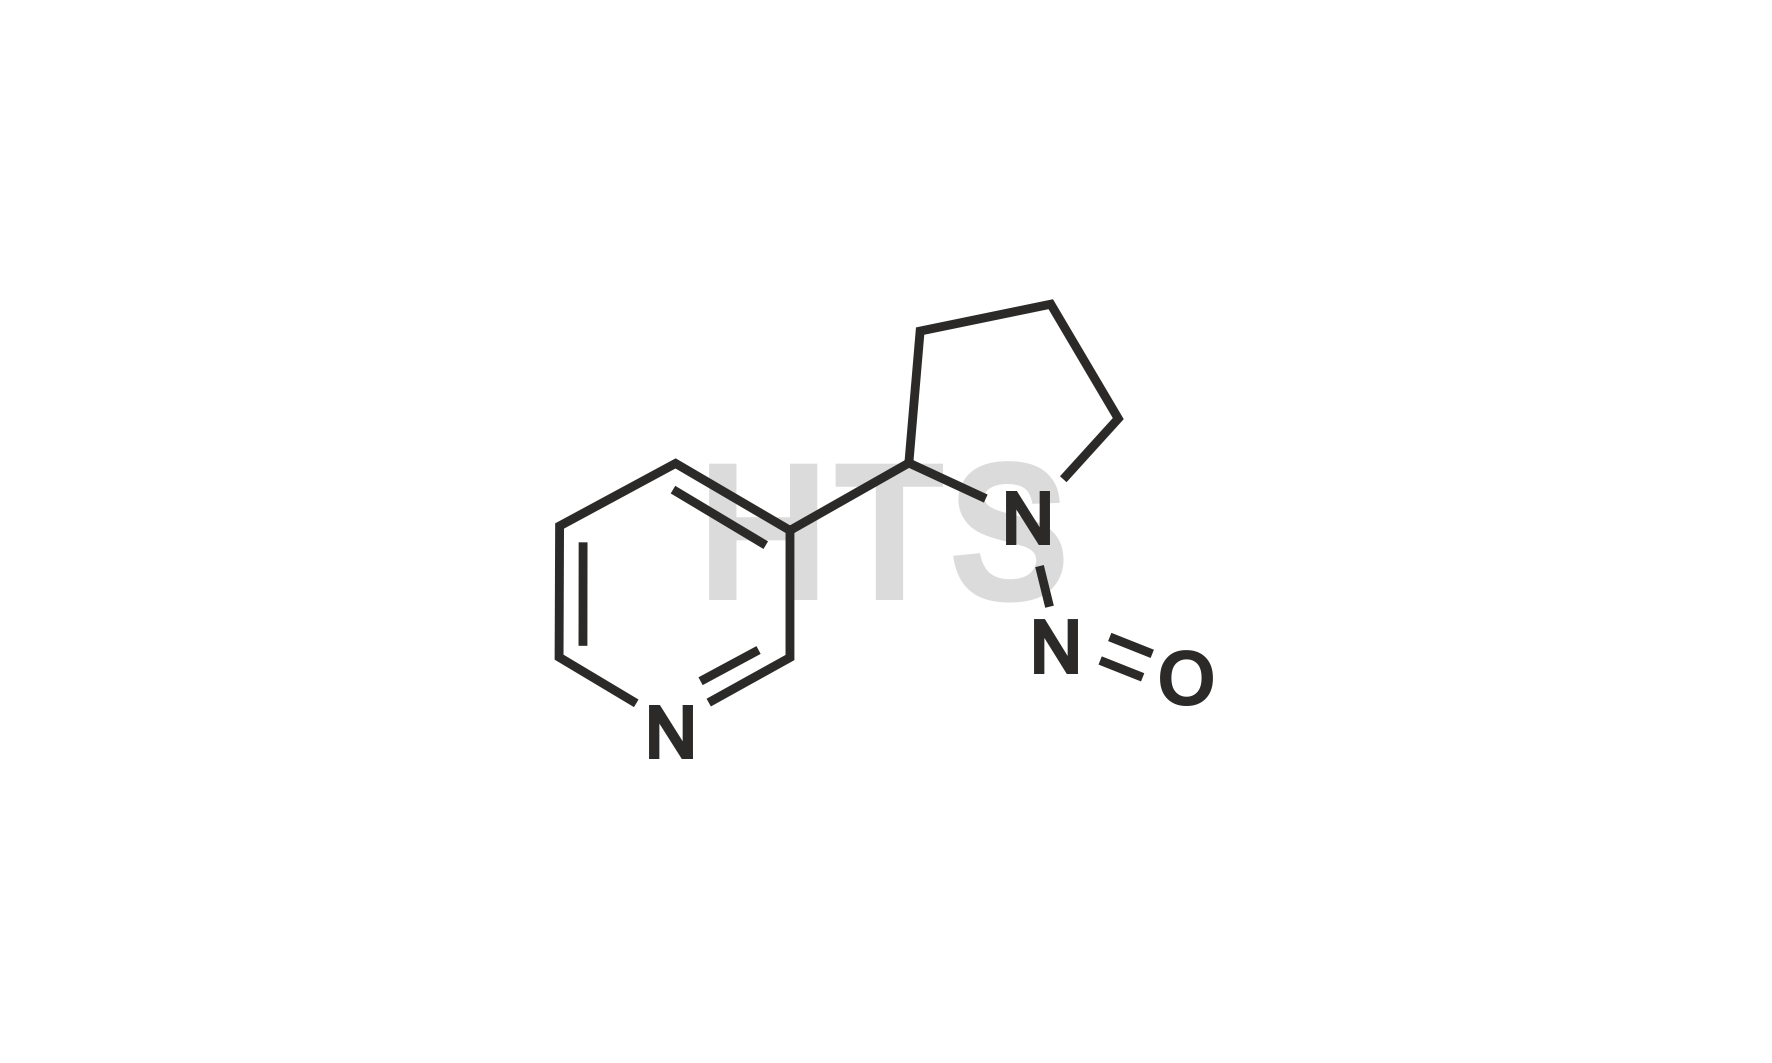 NNN (N'-nitrosonornicotine)